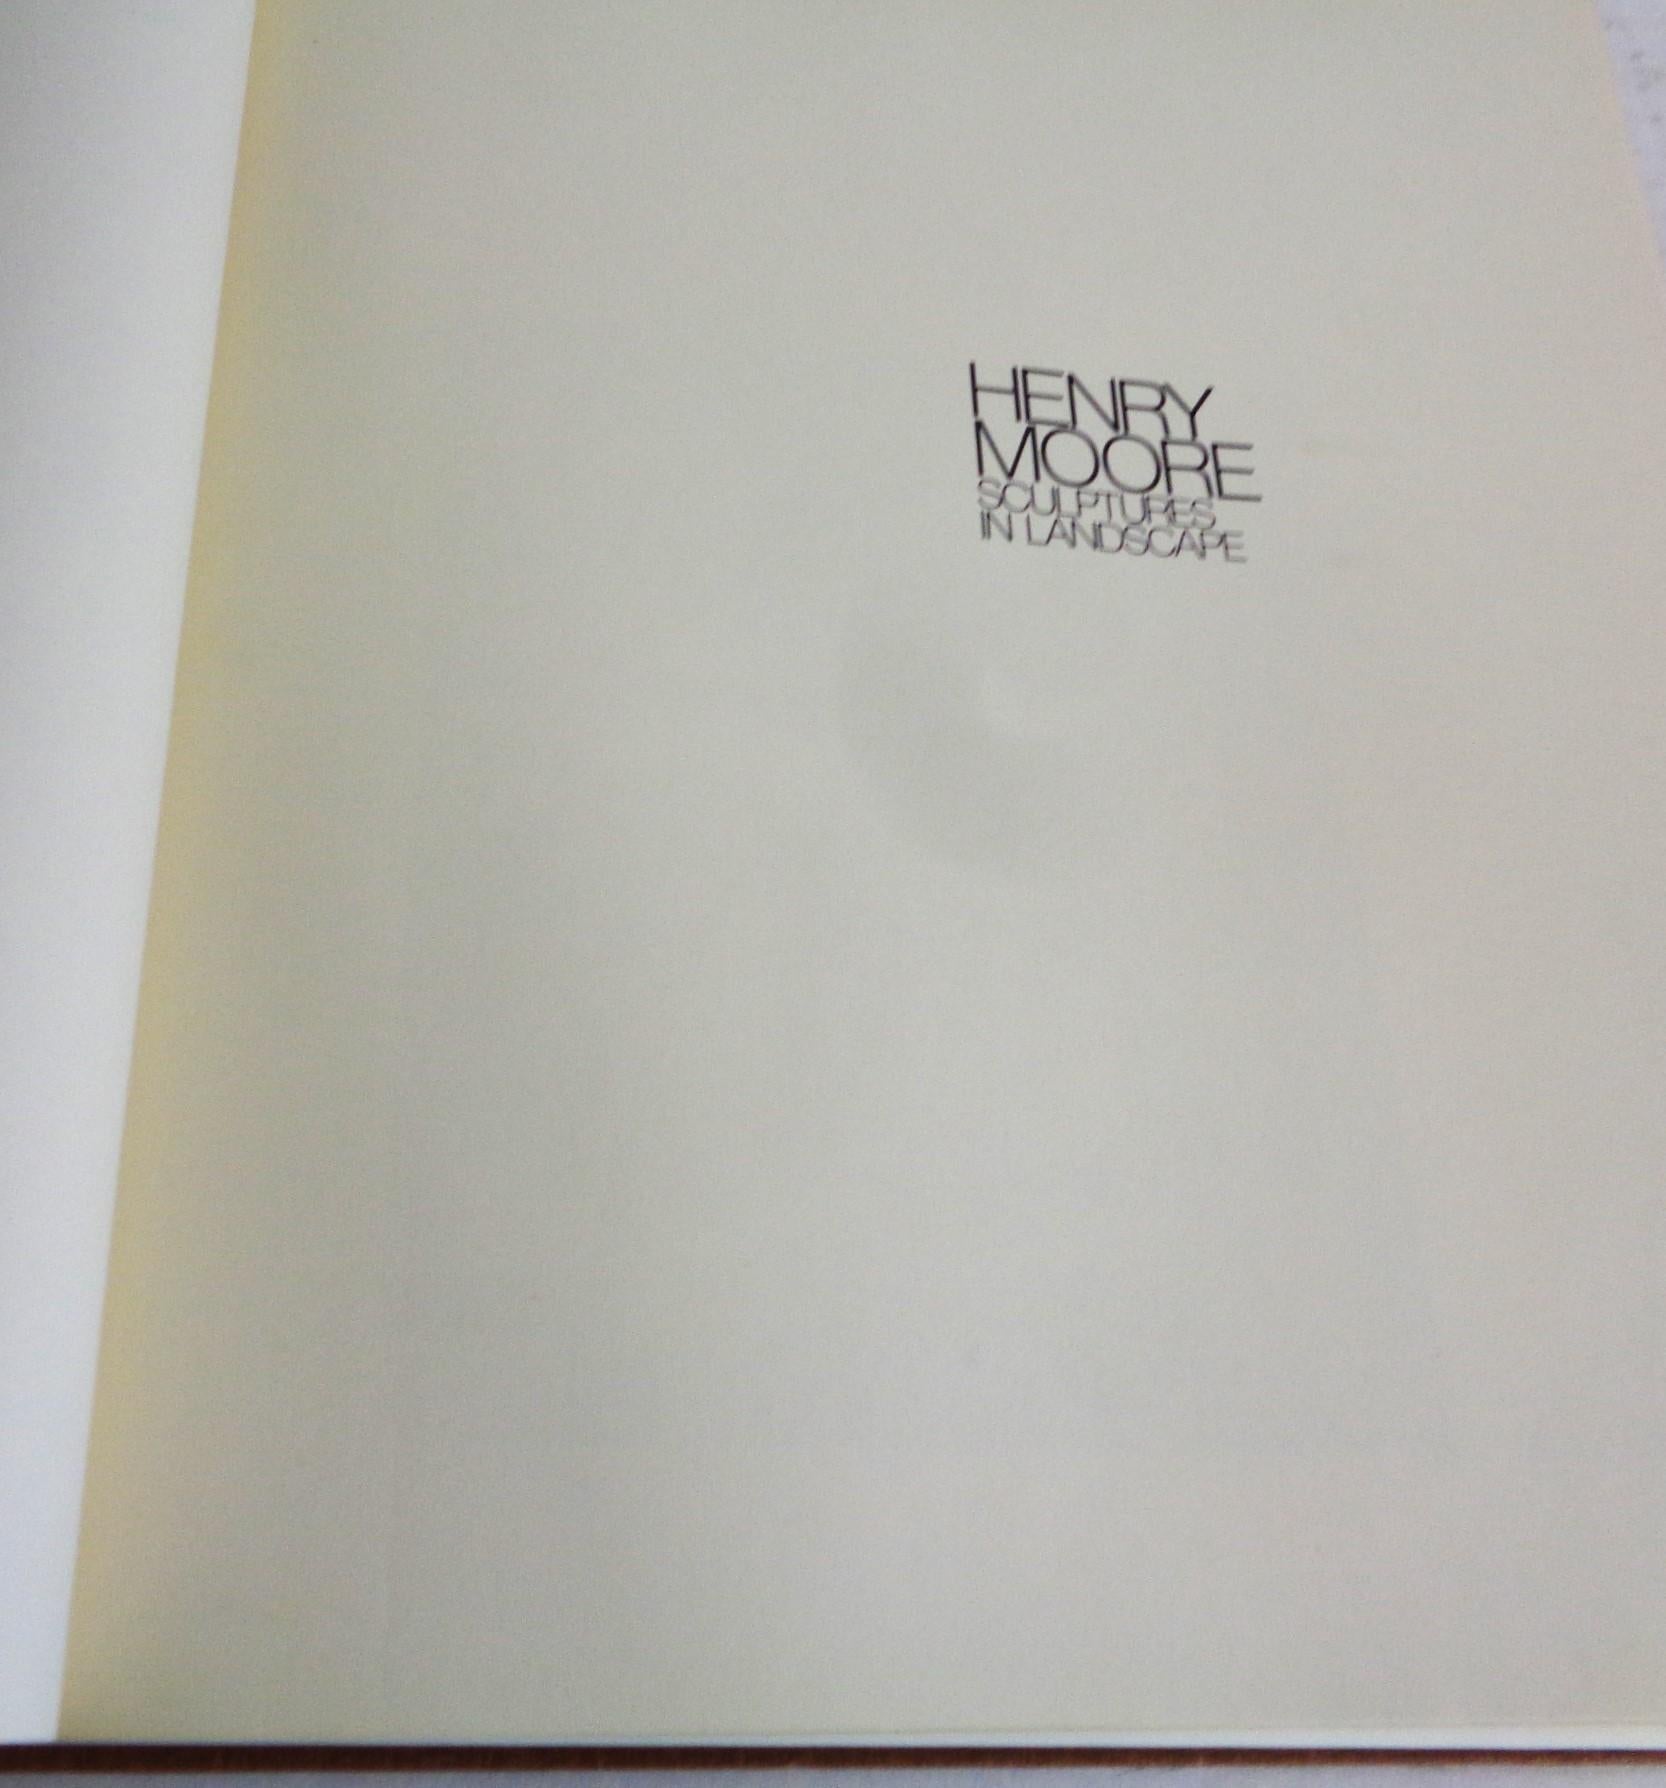 Fin du 20e siècle Sculptures in Landscape de Henry Moore, 1978 Clarkson N. Potter, 1ère édition en vente